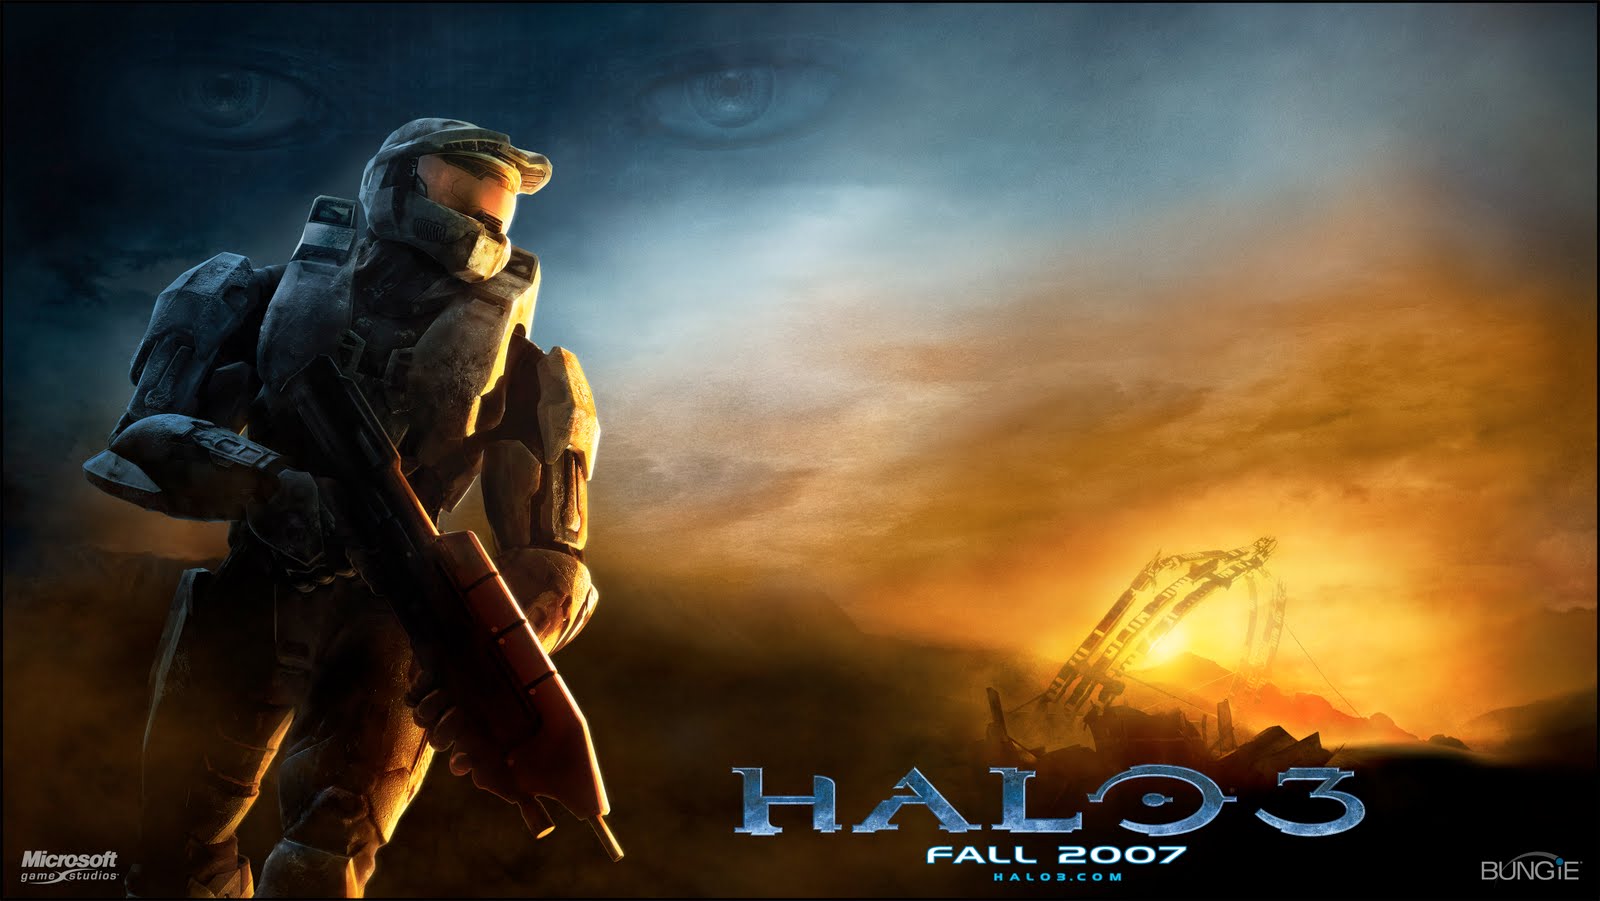 Halo Wallpaper 1080p Halo 3 wallpaper 1080p